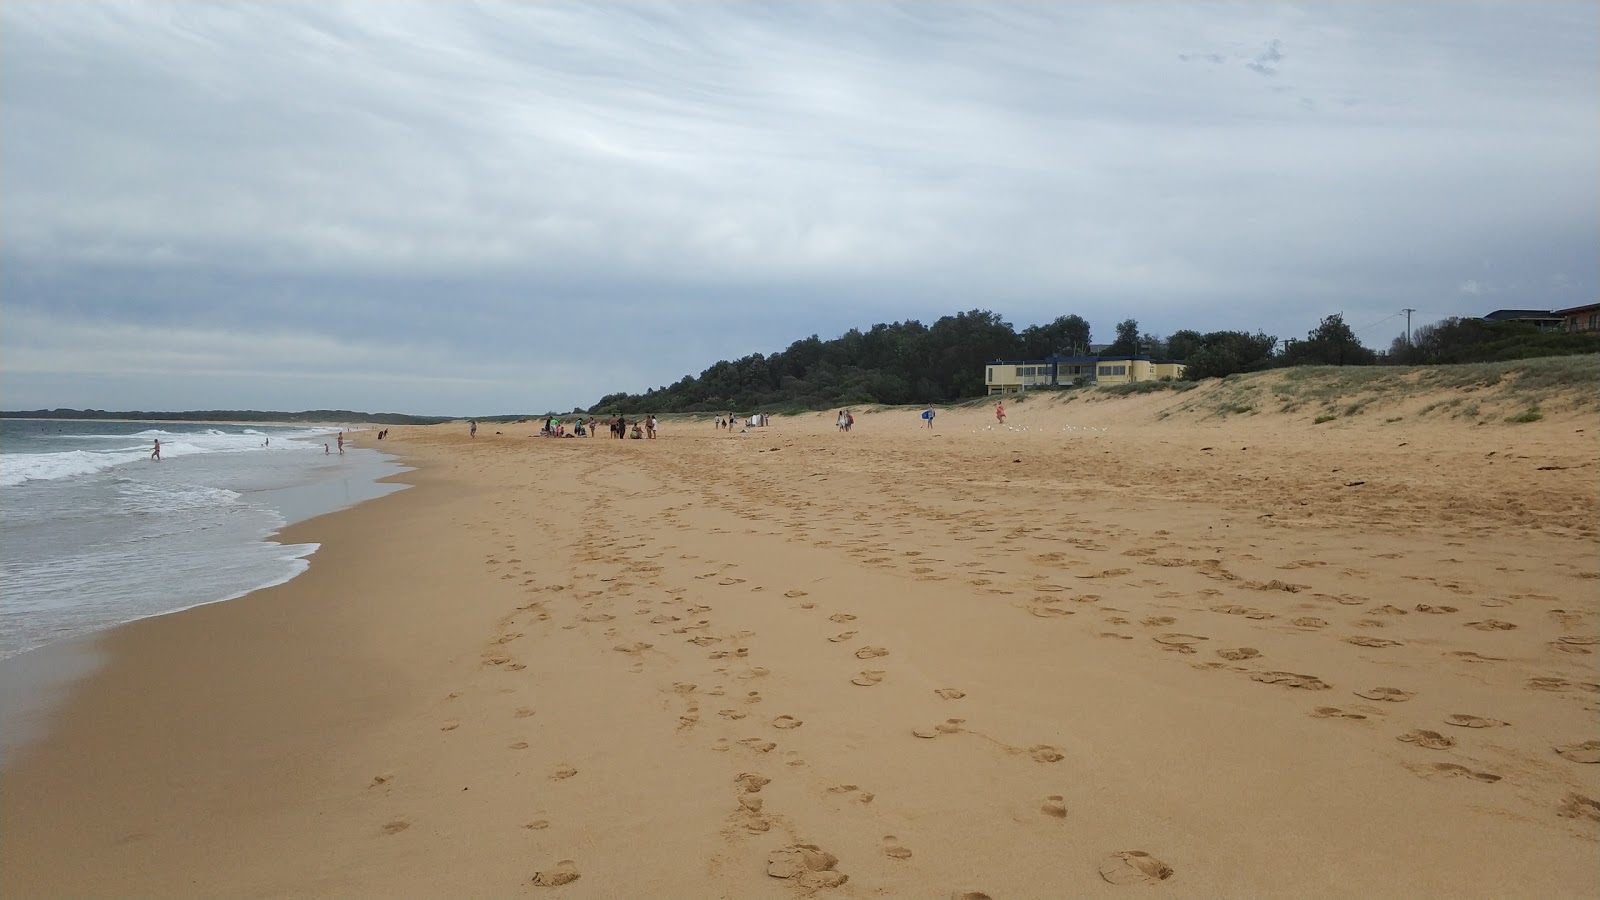 Zdjęcie Wollumboola Beach z powierzchnią jasny, drobny piasek